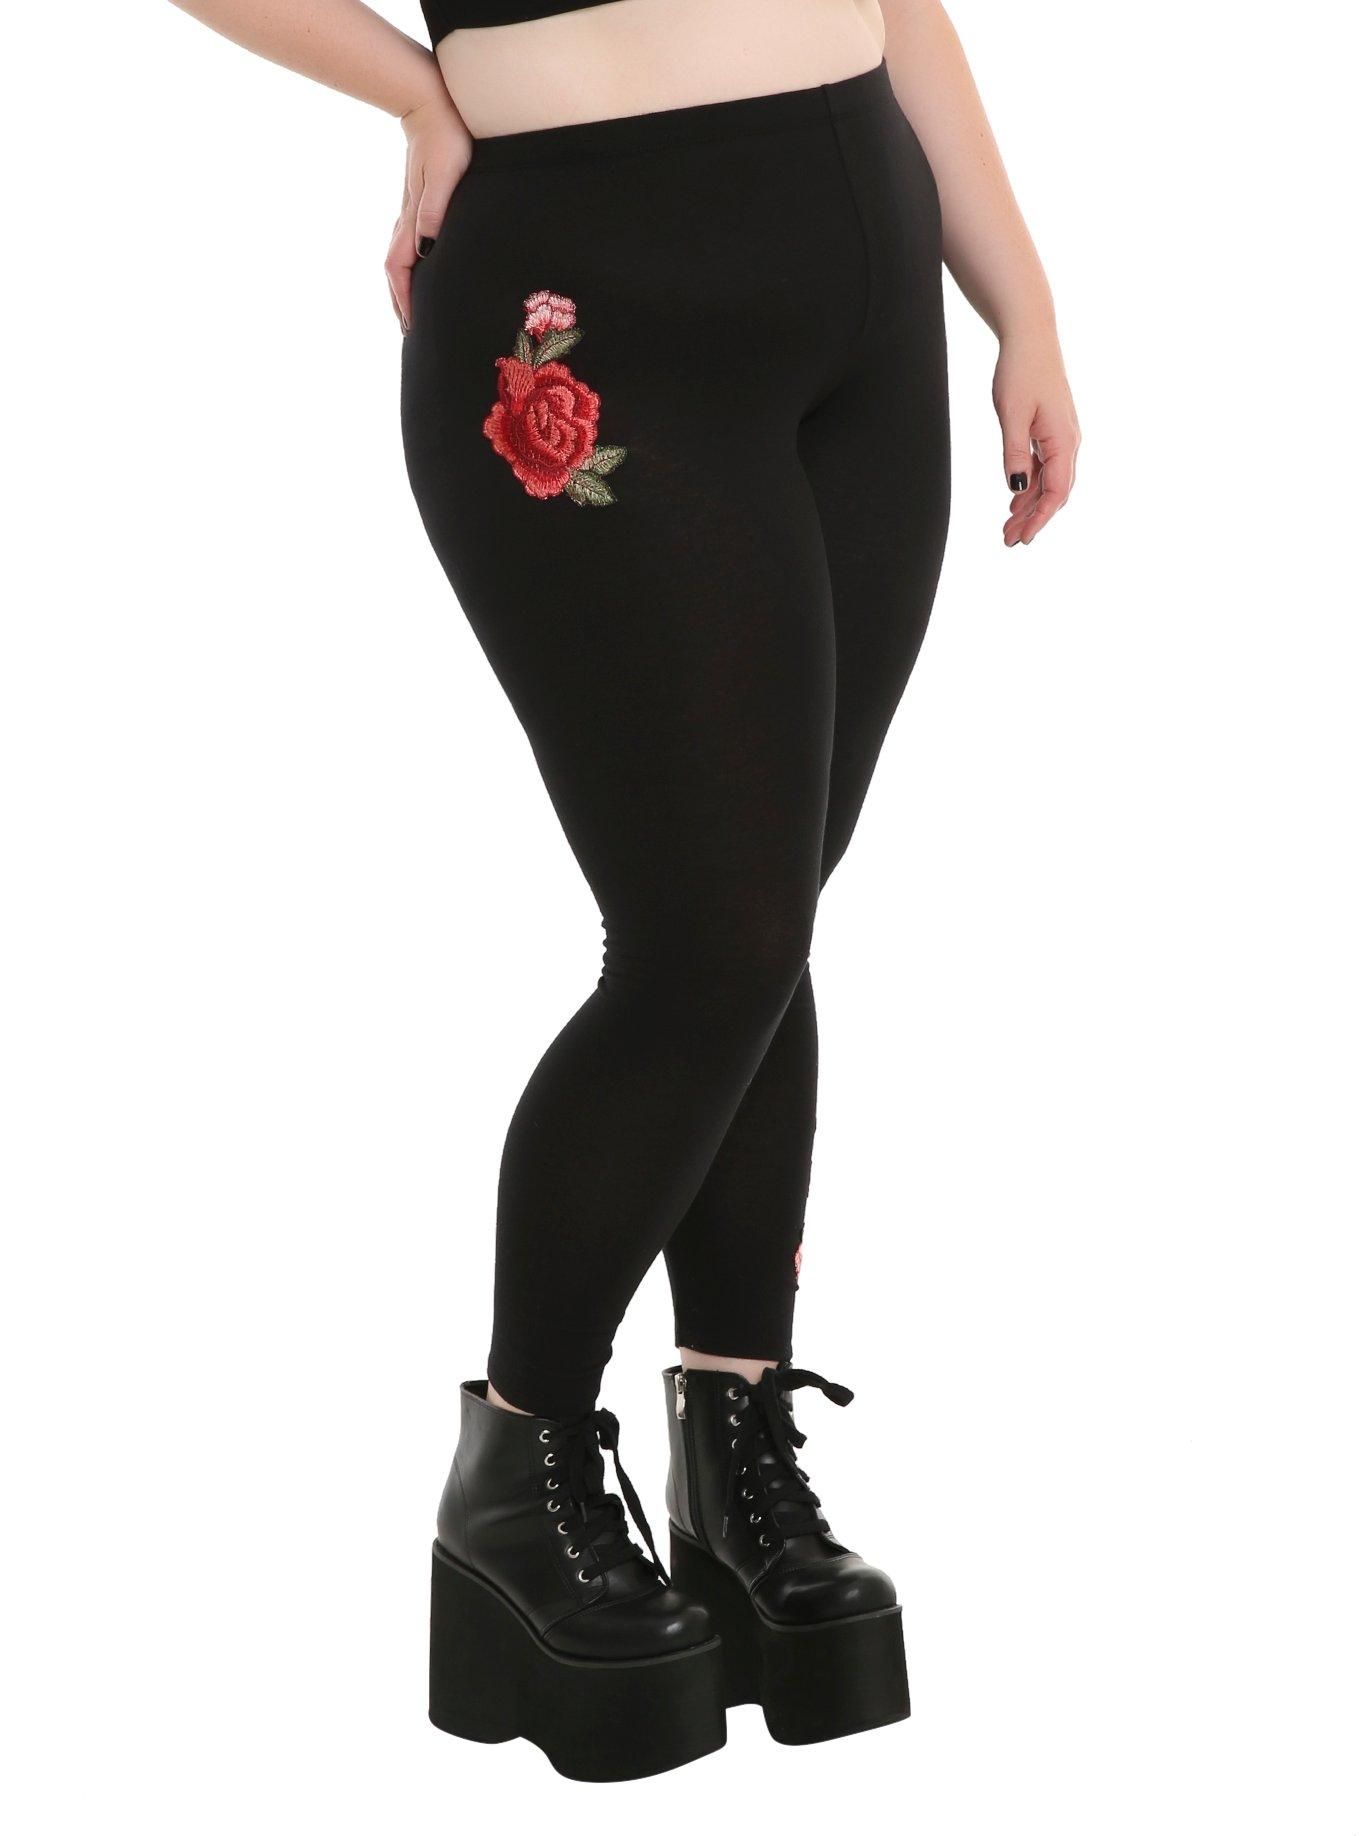 Rose Applique Leggings Plus Size, BLACK, hi-res